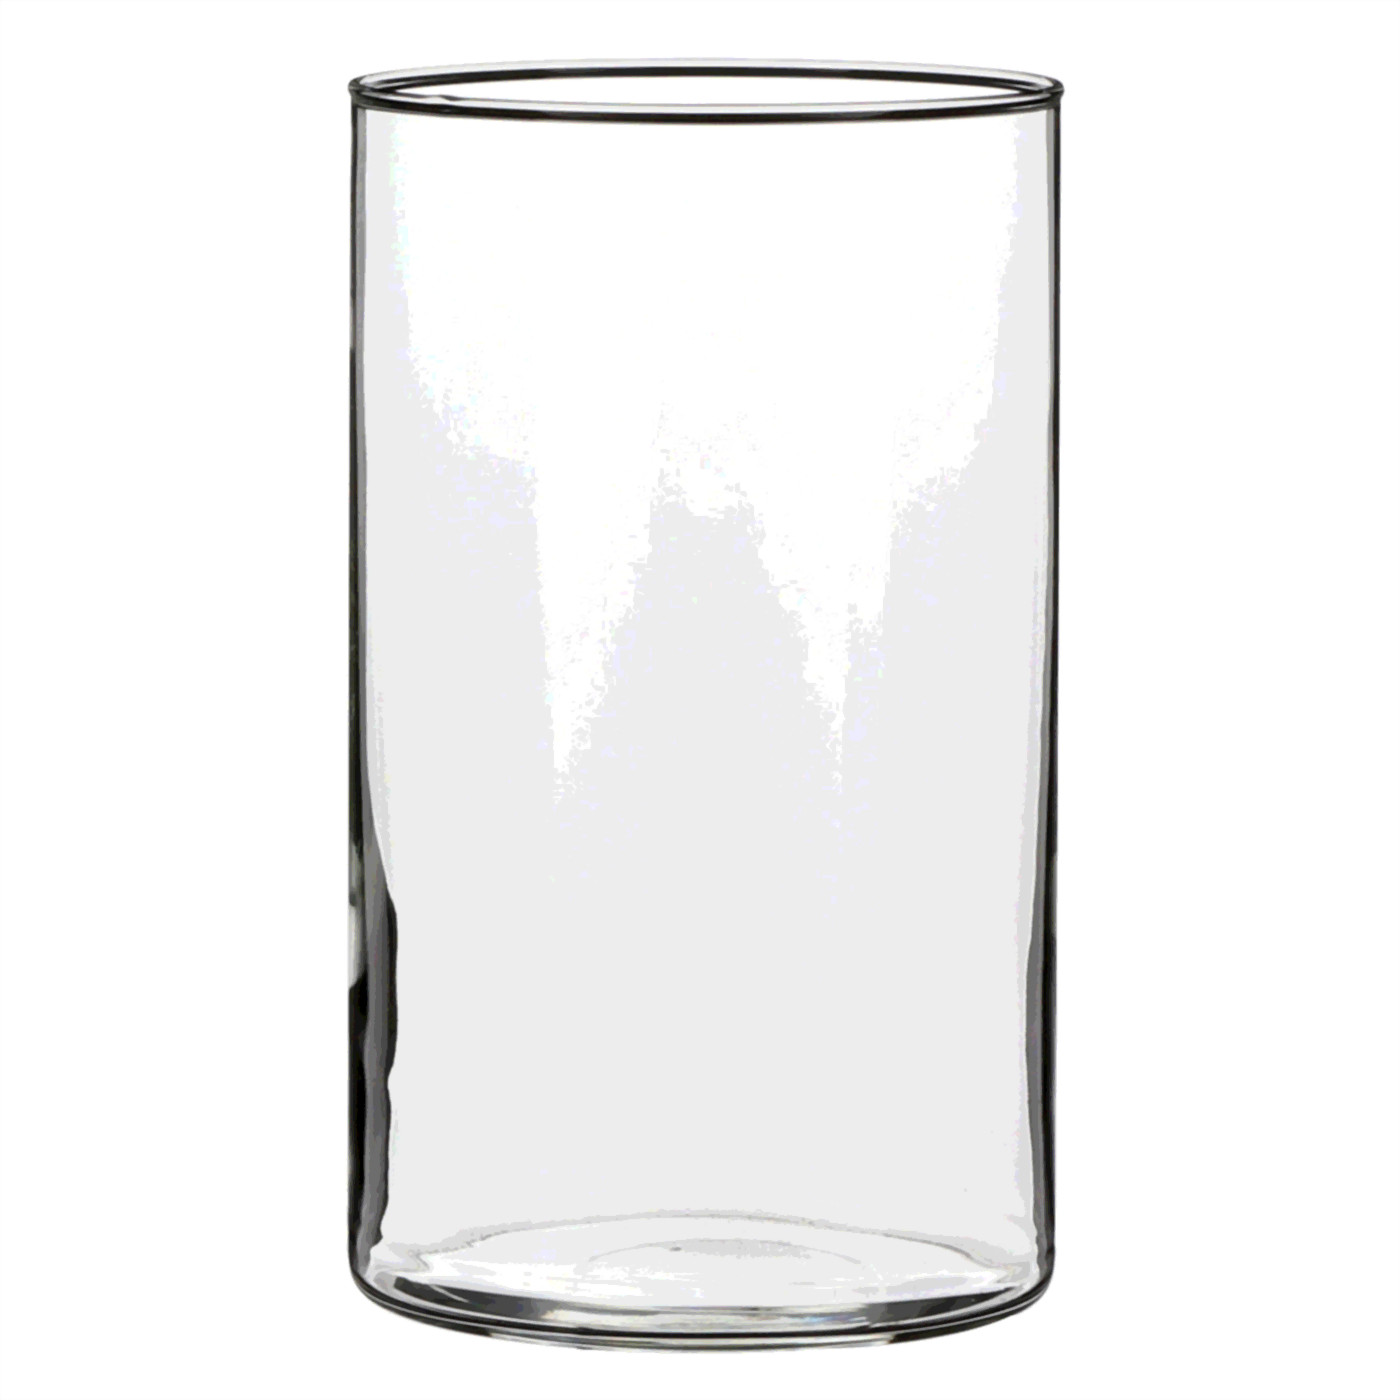 1x Glazen cilinder vaas/vazen 20 cm rond